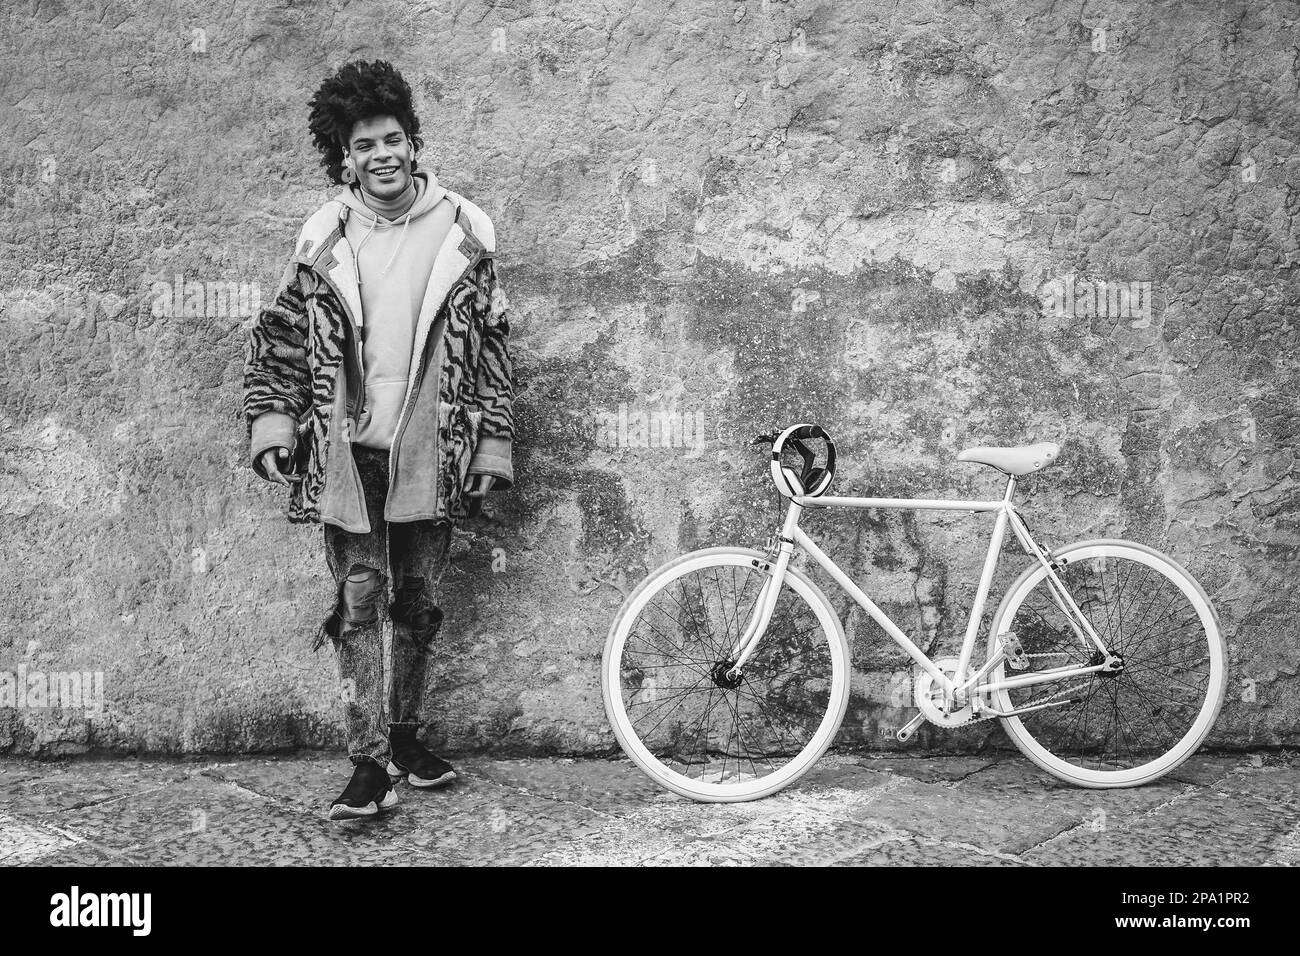 Niño africano joven que se divierte con su bicicleta al aire libre en la ciudad - Enfoque suave en la cara - Edición en blanco y negro Foto de stock